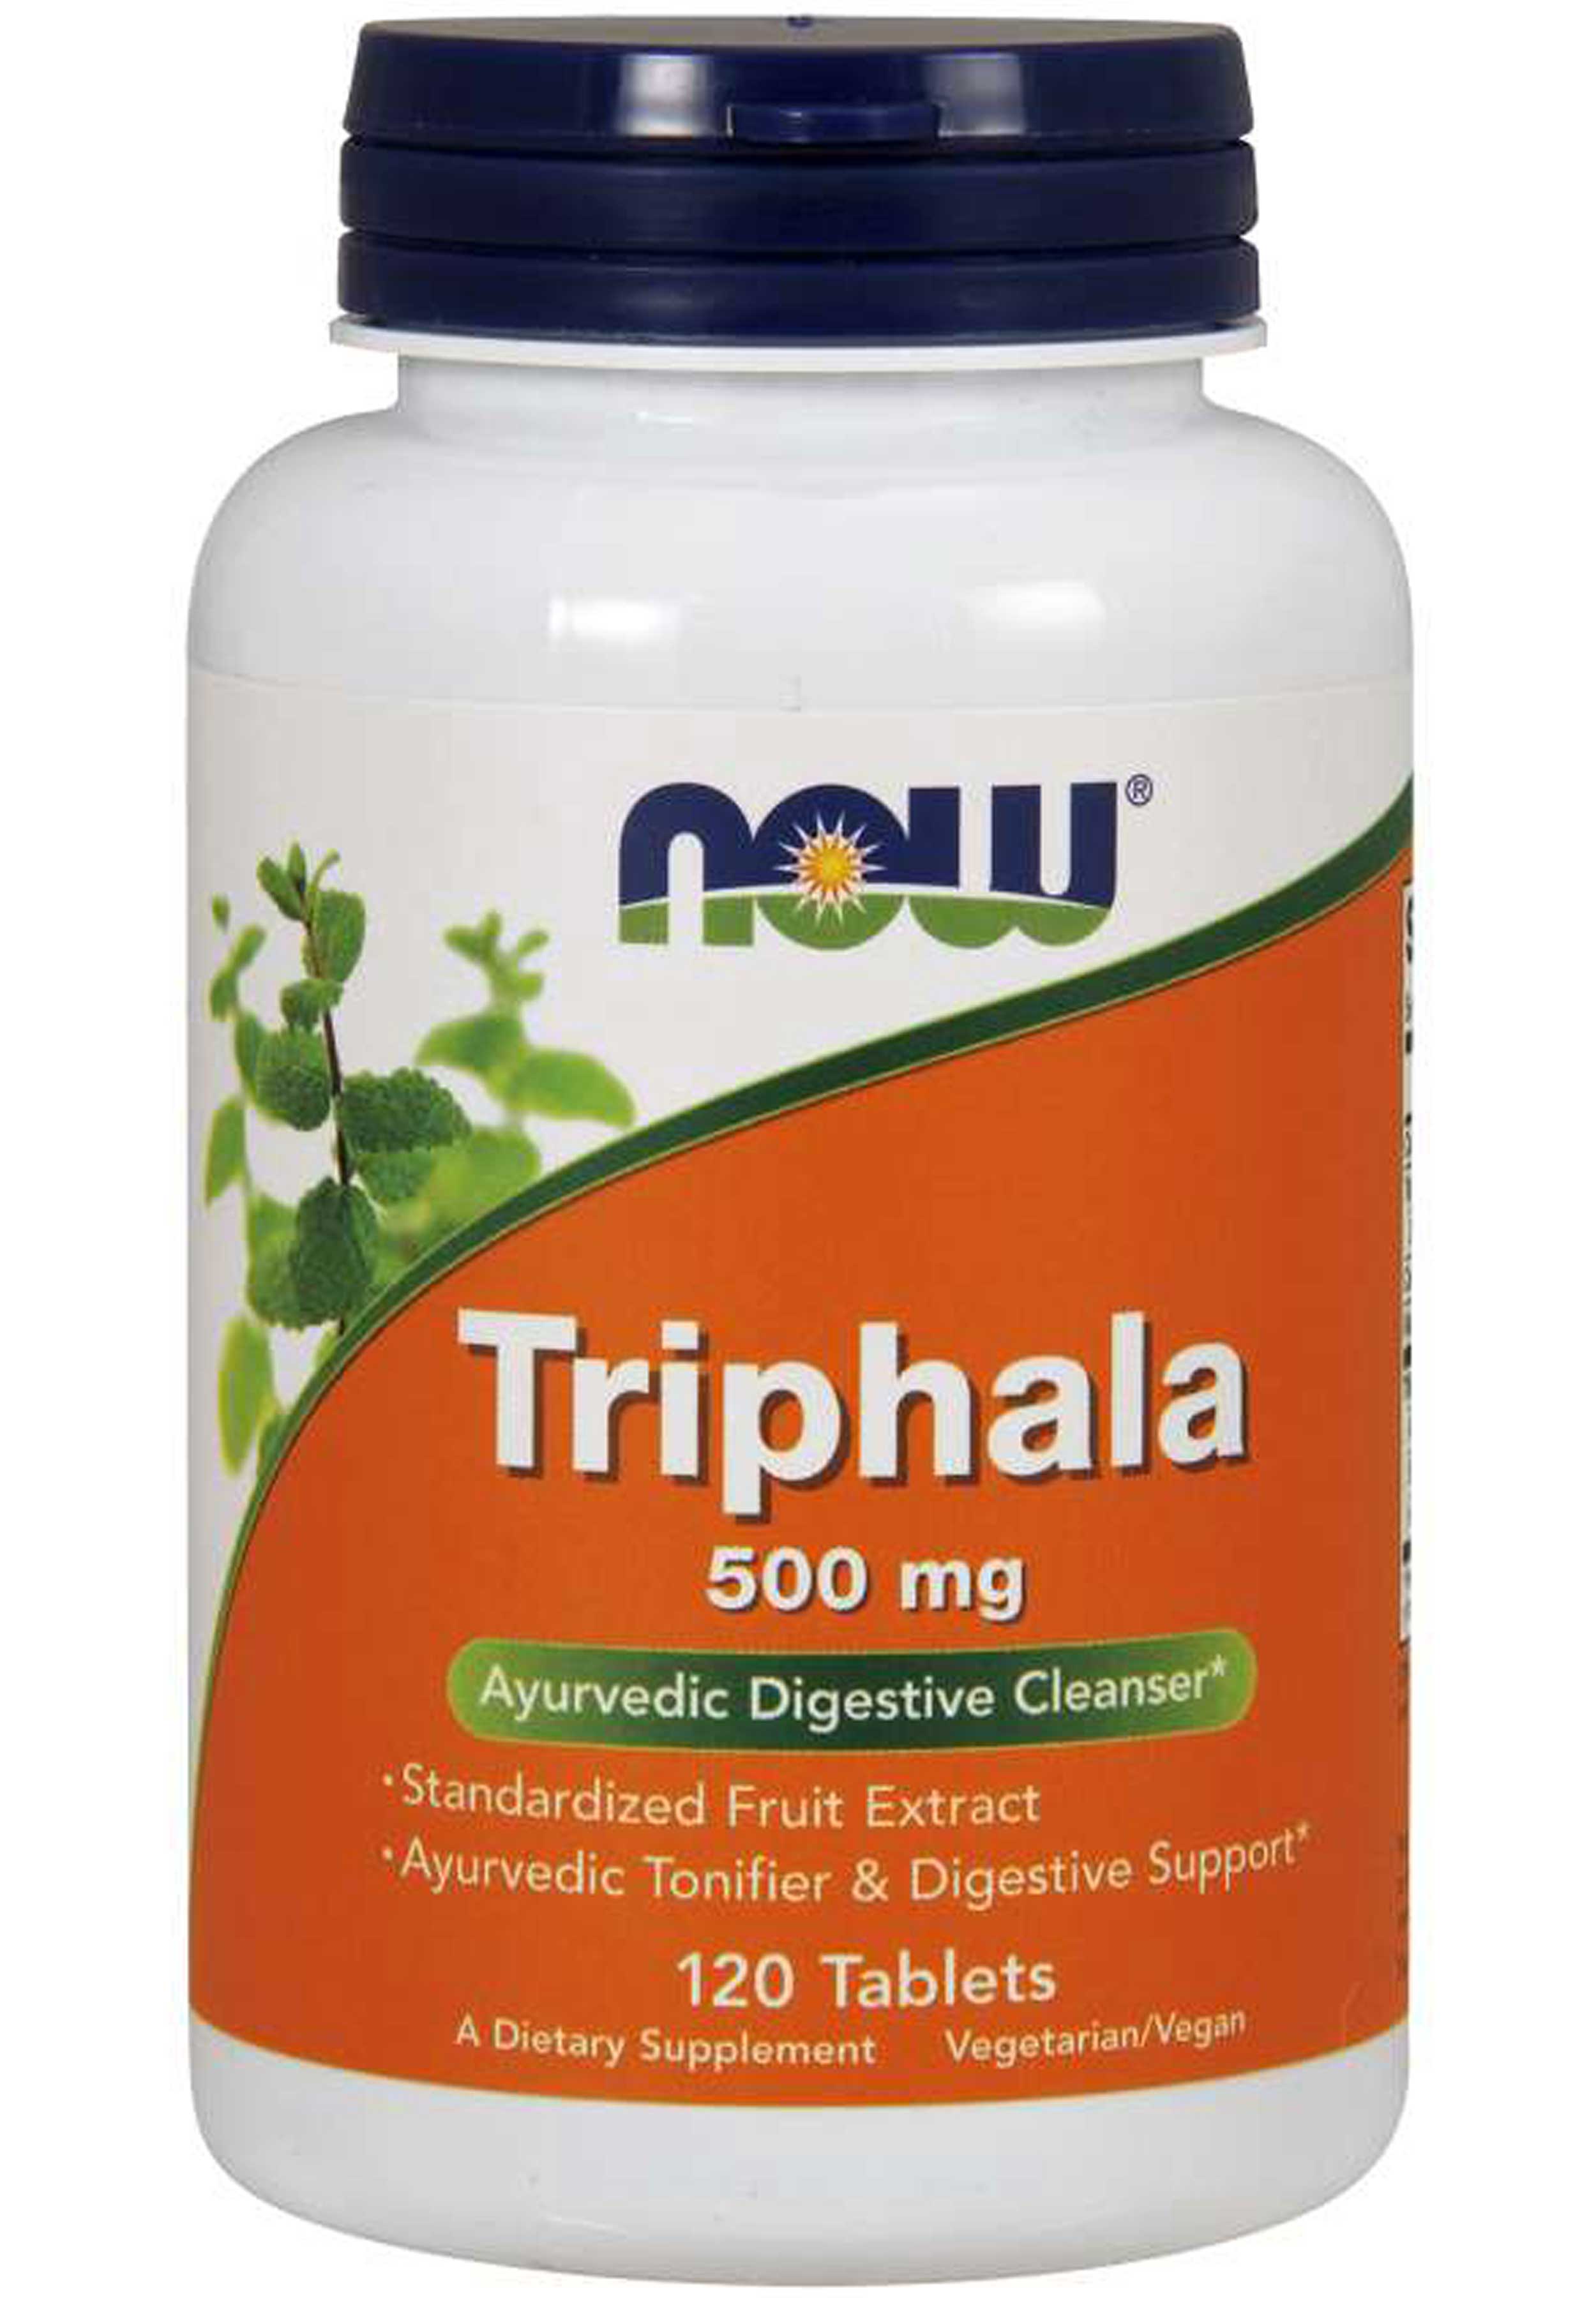 NOW Triphala 500 mg